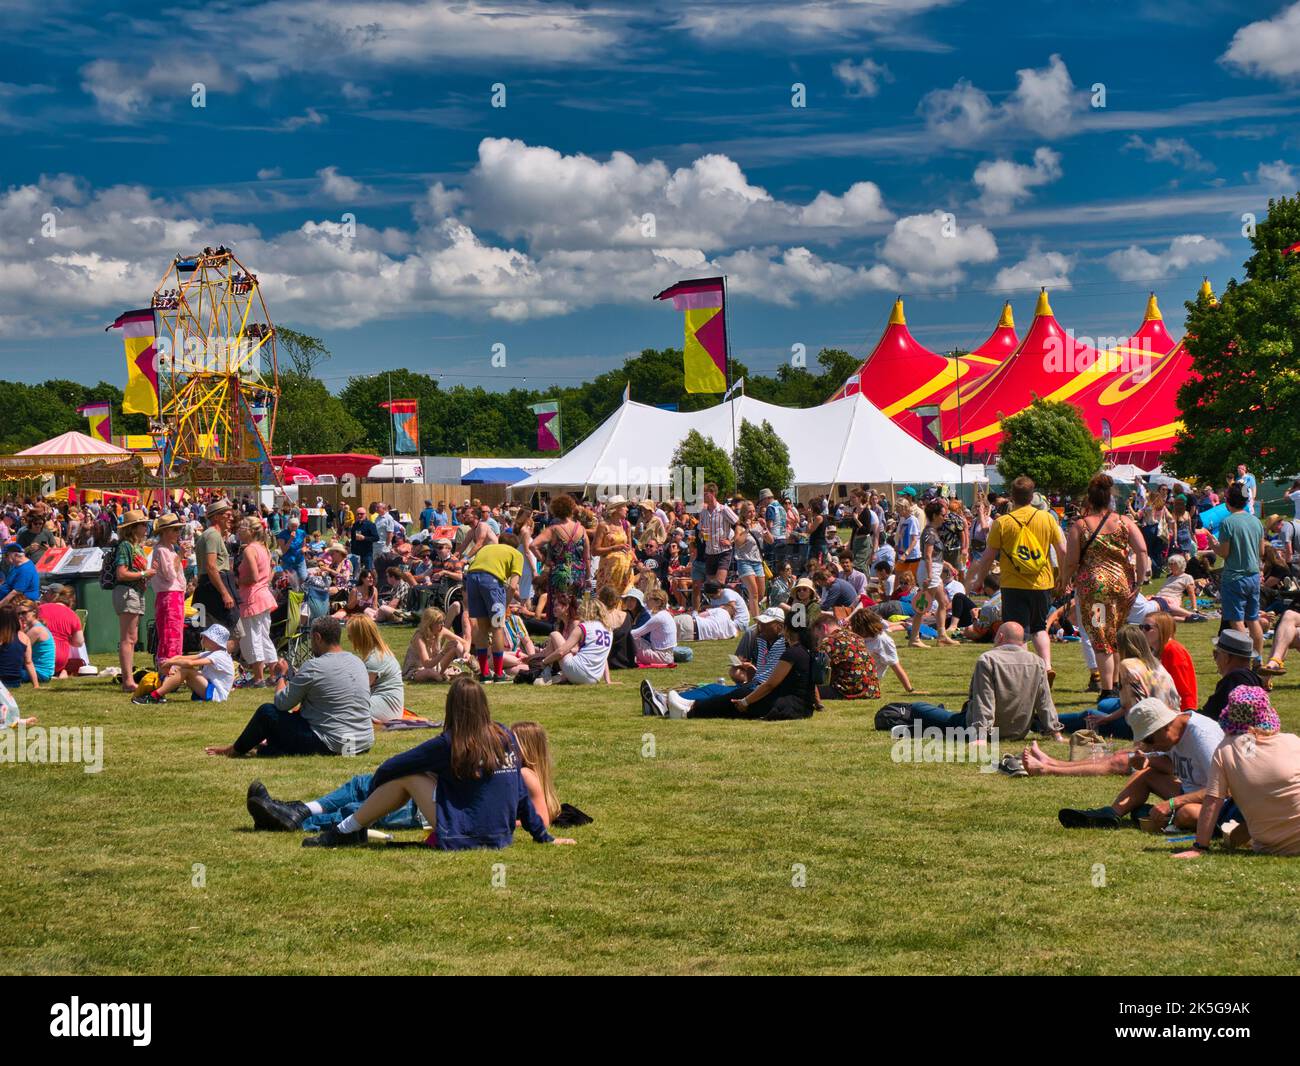 Ein großes Publikum bei einem Sommer-Musikfestival im Freien in England, Großbritannien. Aufgenommen an einem sonnigen Tag mit blauem Himmel. Stockfoto